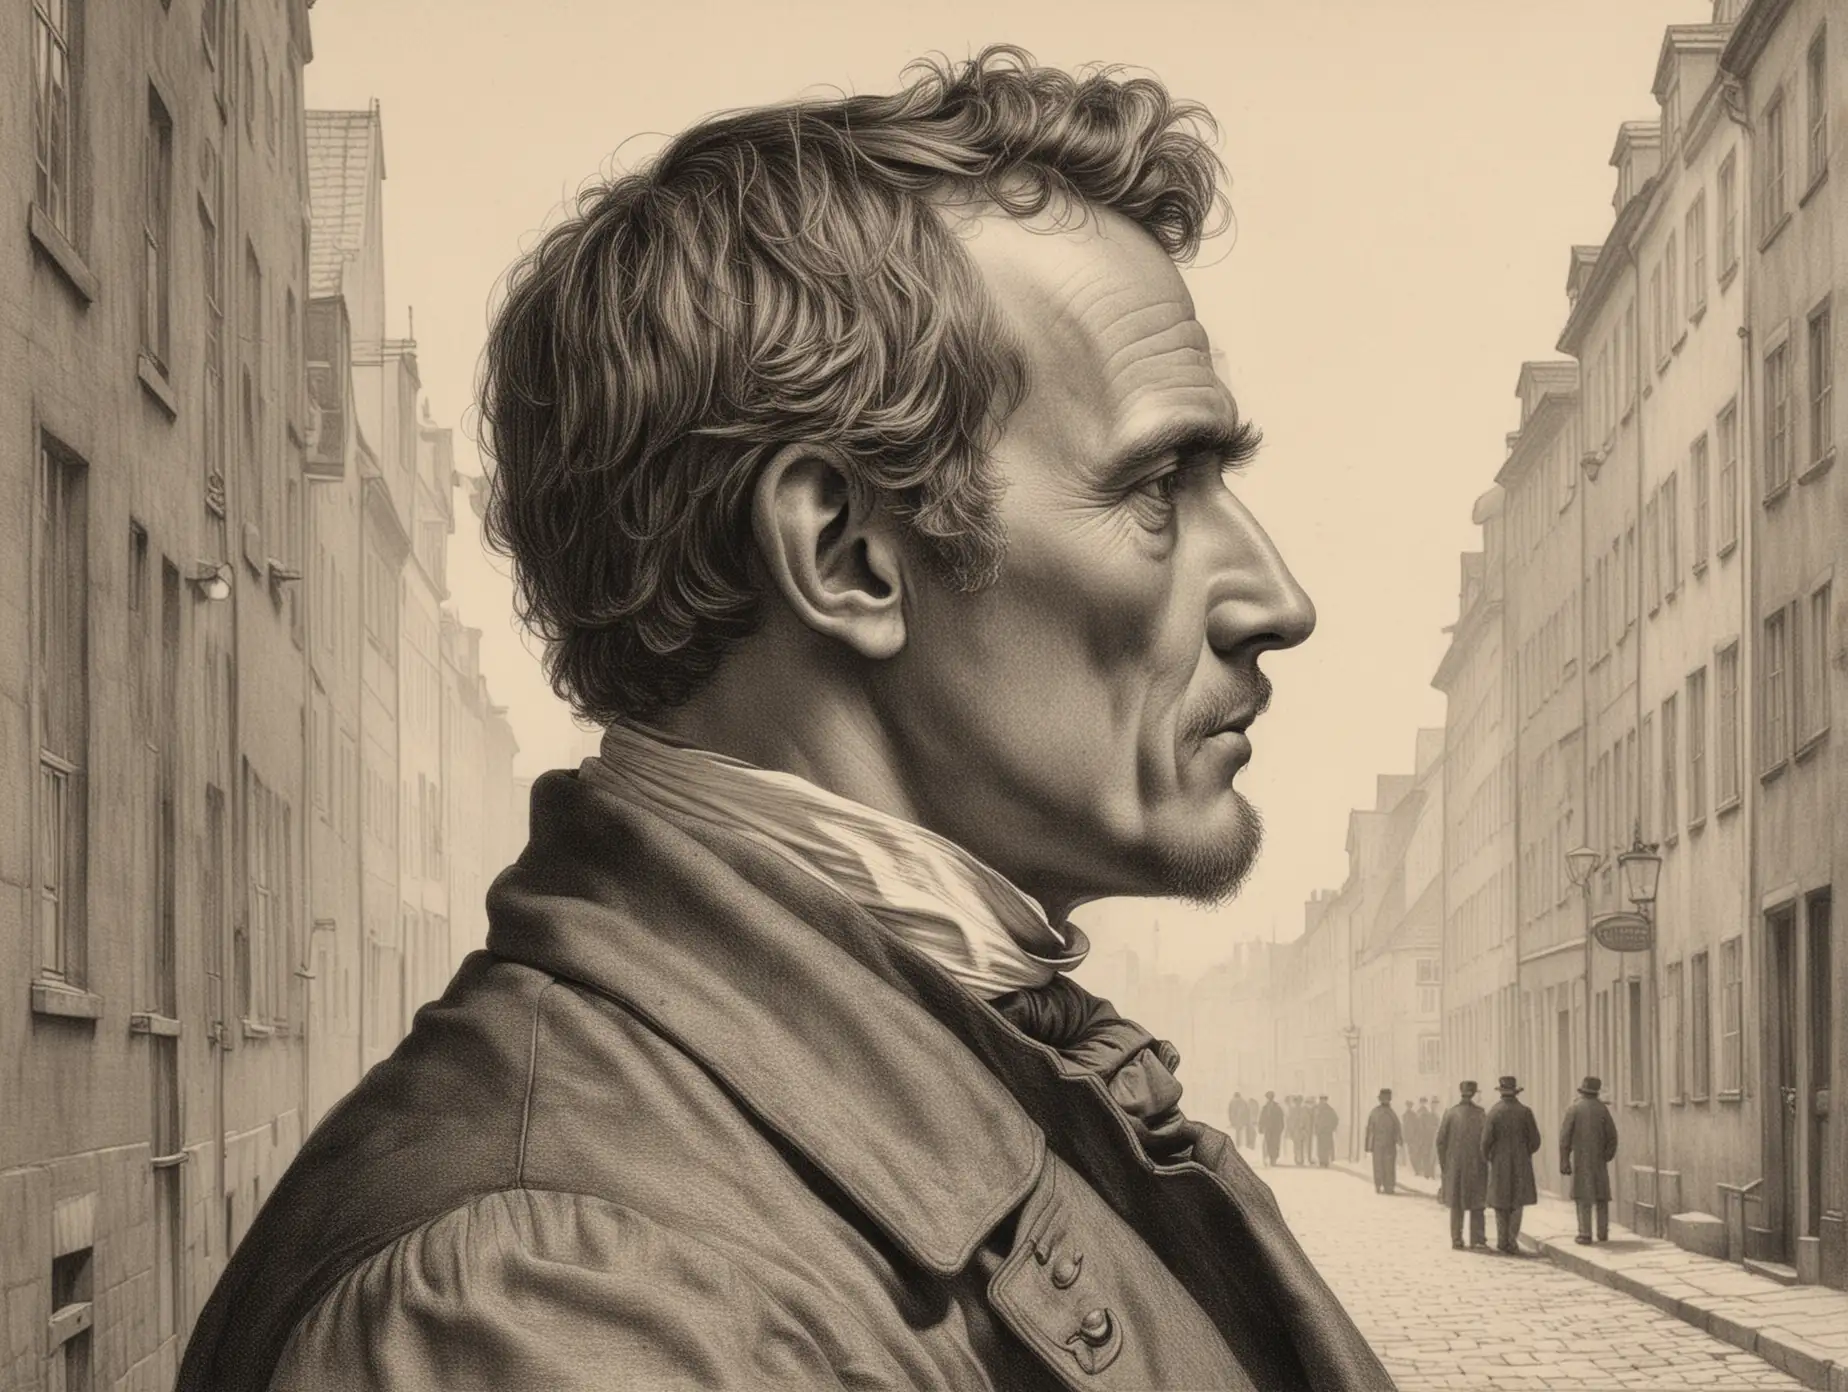 Man Sketching in 1850s Copenhagen Street Scene